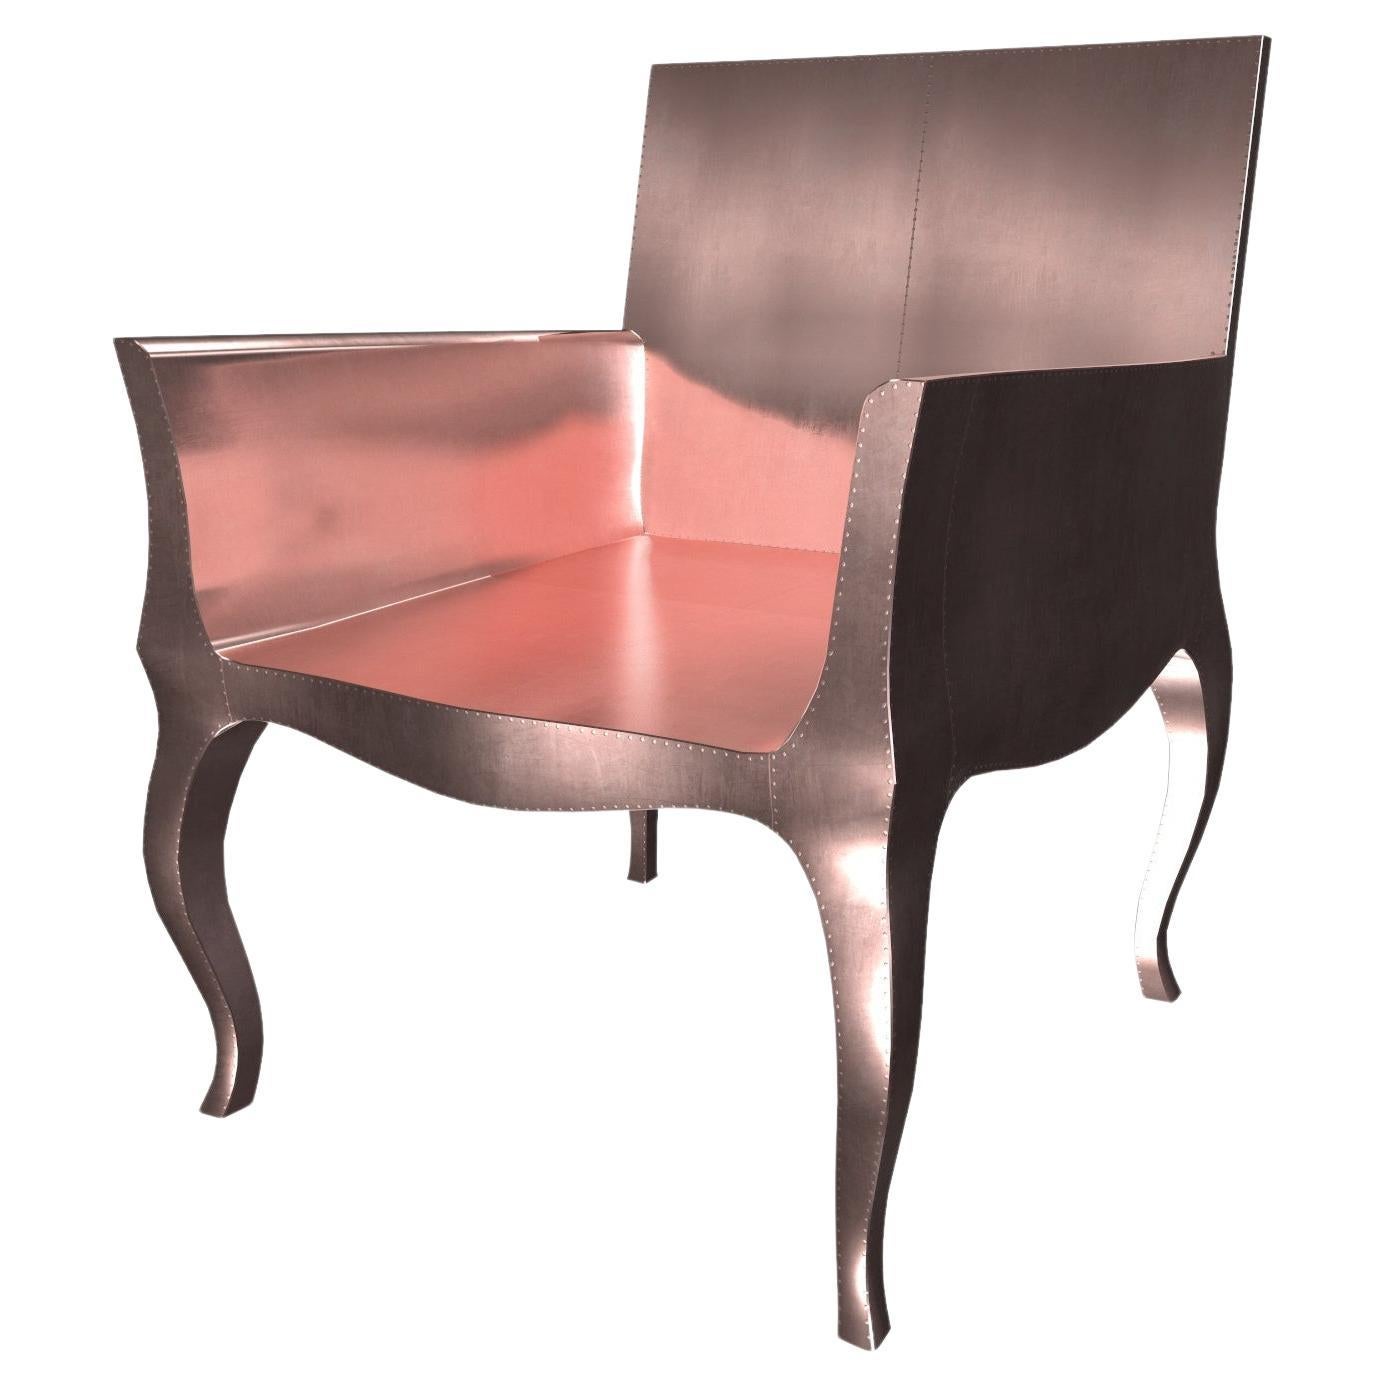 Jugendstilstühle aus rauchfarbenem Kupfer von Paul Mathieu für S. Odegard